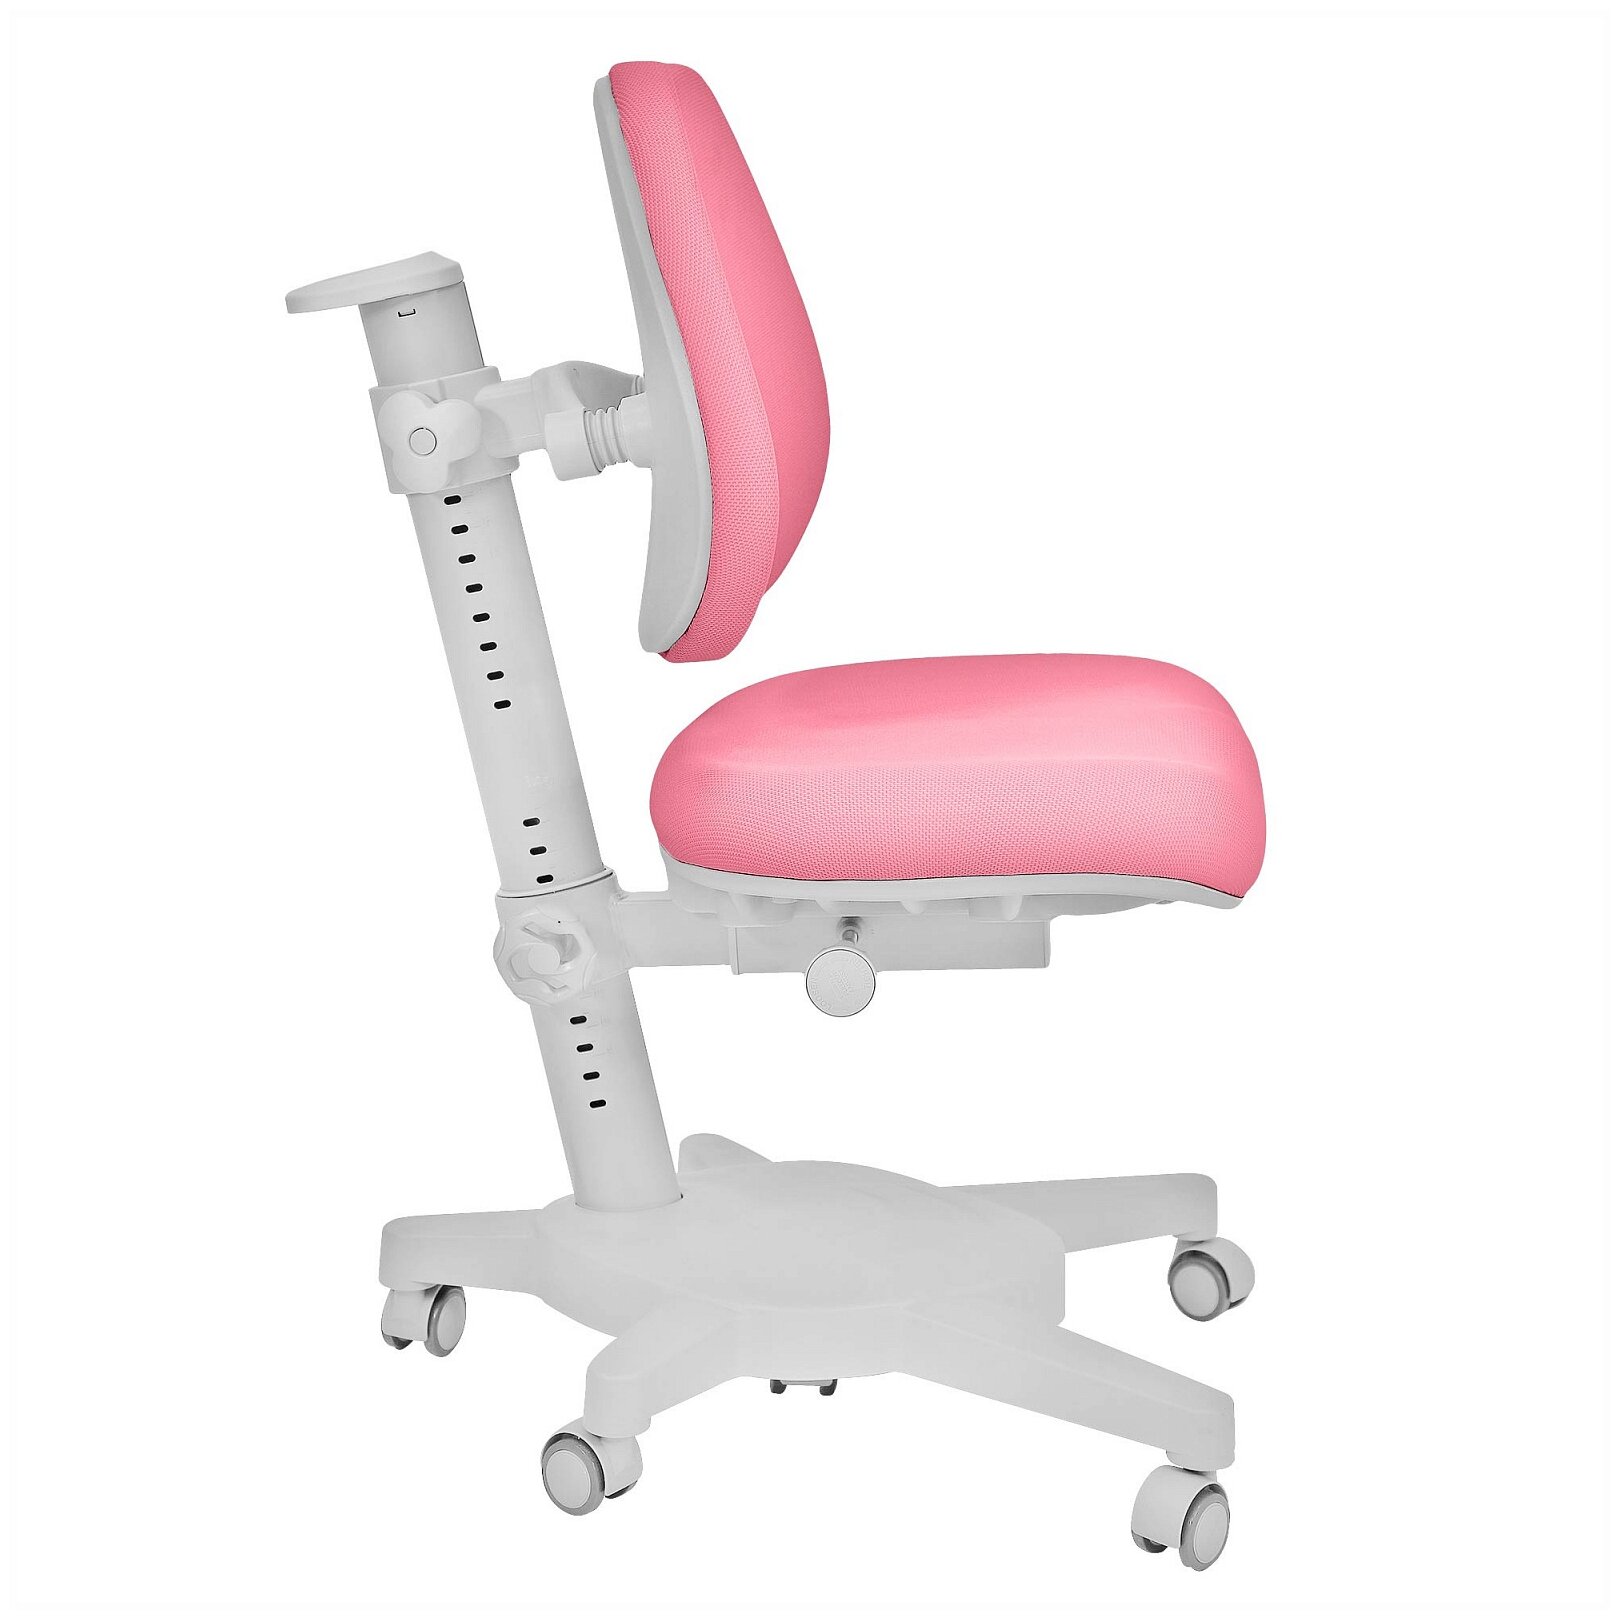 Комплект Anatomica Smart-60 Lux парта + кресло + надстройка + органайзер + ящик белый/розовый с розовым креслом Armata Duos - фотография № 4